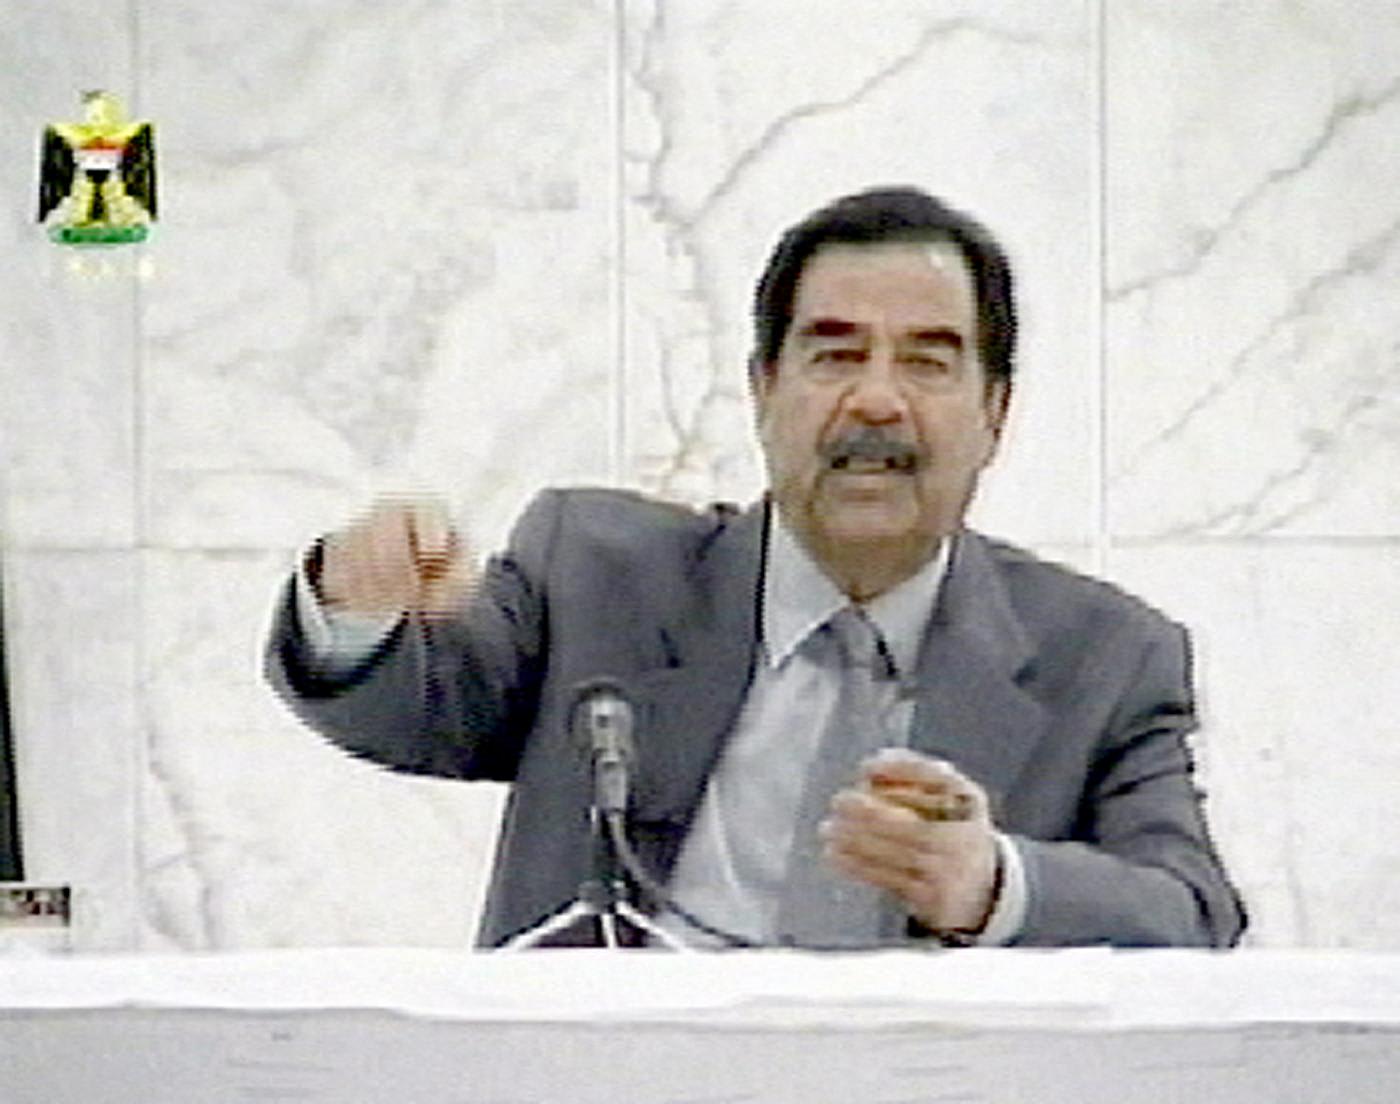 تفاعل على فيديو قيس الخزعلي وتصريح "صدام حسين أصله هندي بتحليل DNA"